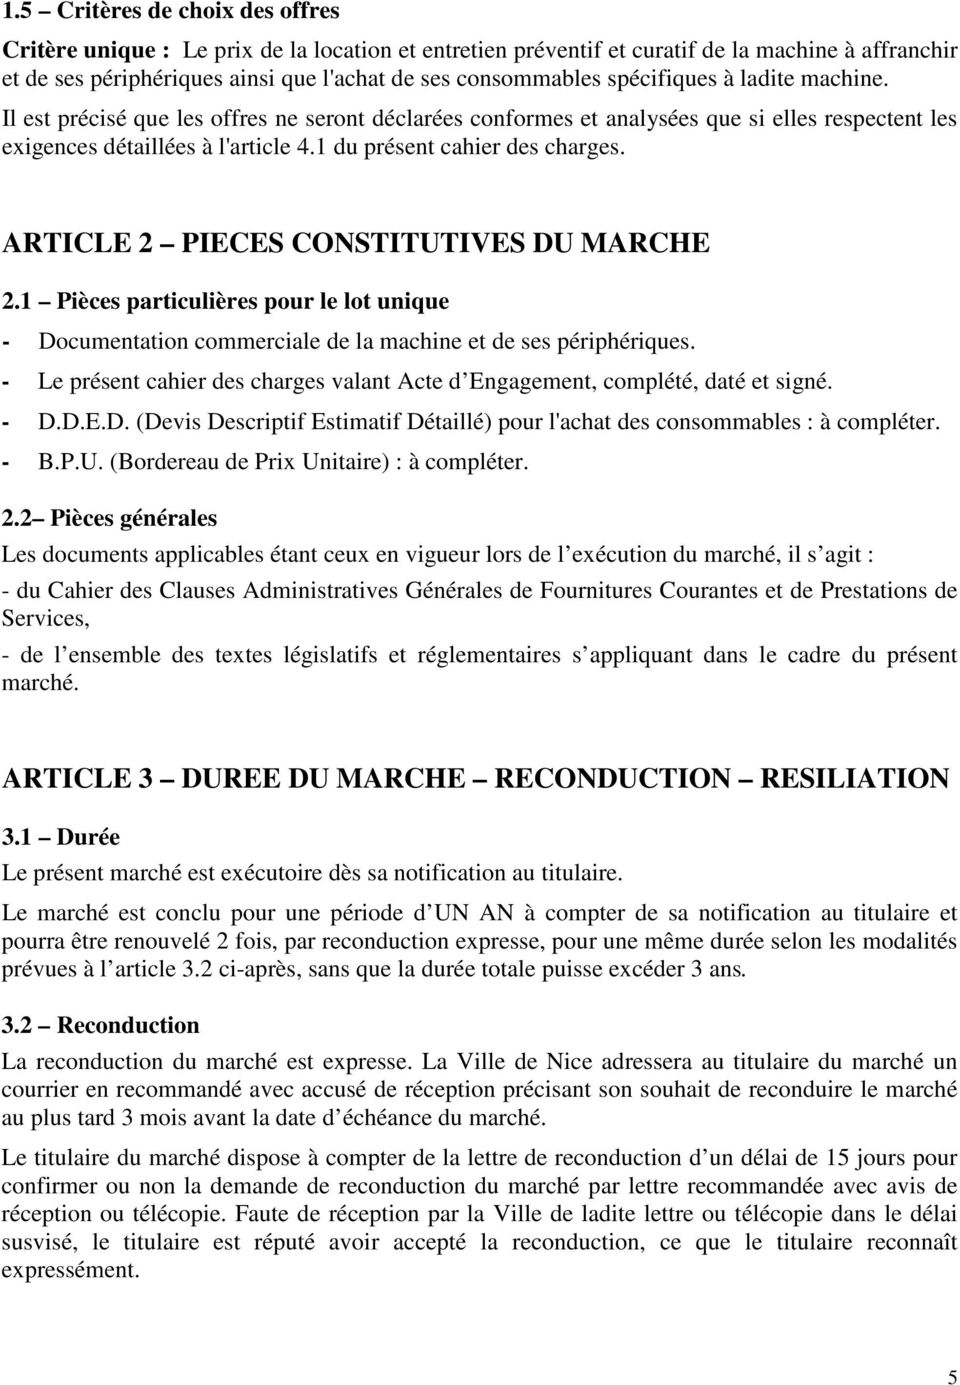 ARTICLE 2 PIECES CONSTITUTIVES DU MARCHE 2.1 Pièces particulières pour le lot unique - Documentation commerciale de la machine et de ses périphériques.